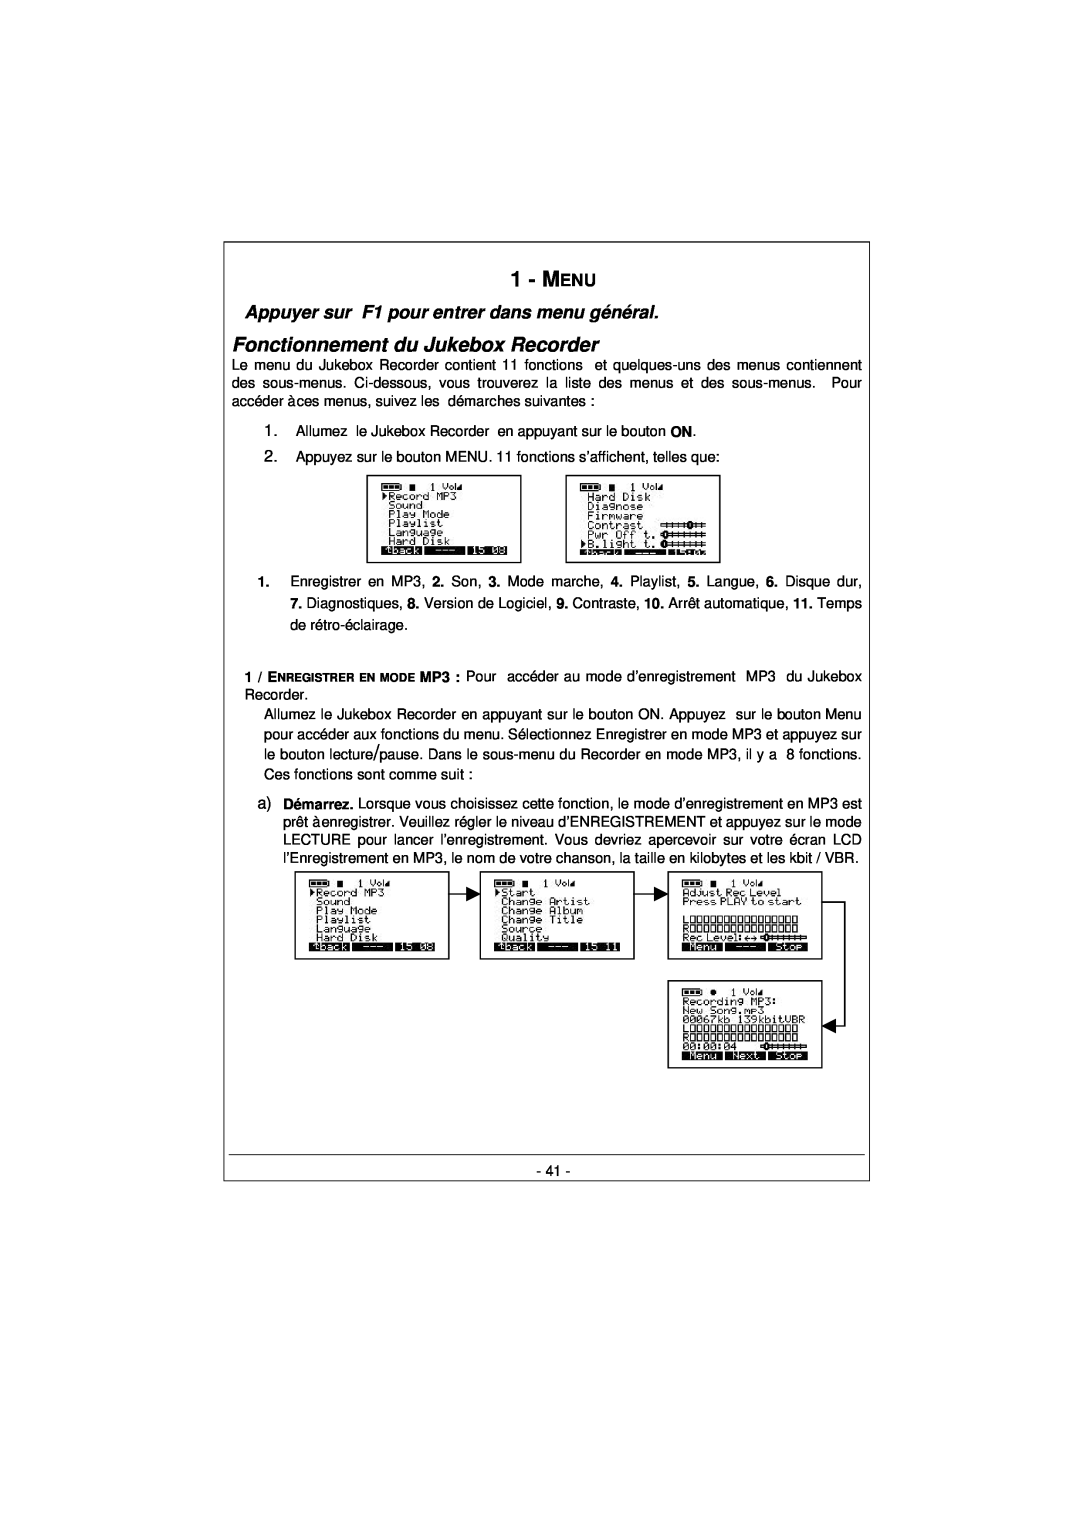 Archos 100628 manual Fonctionnement du Jukebox Recorder, Appuyer sur F1 pour entrer dans menu général, Menu 